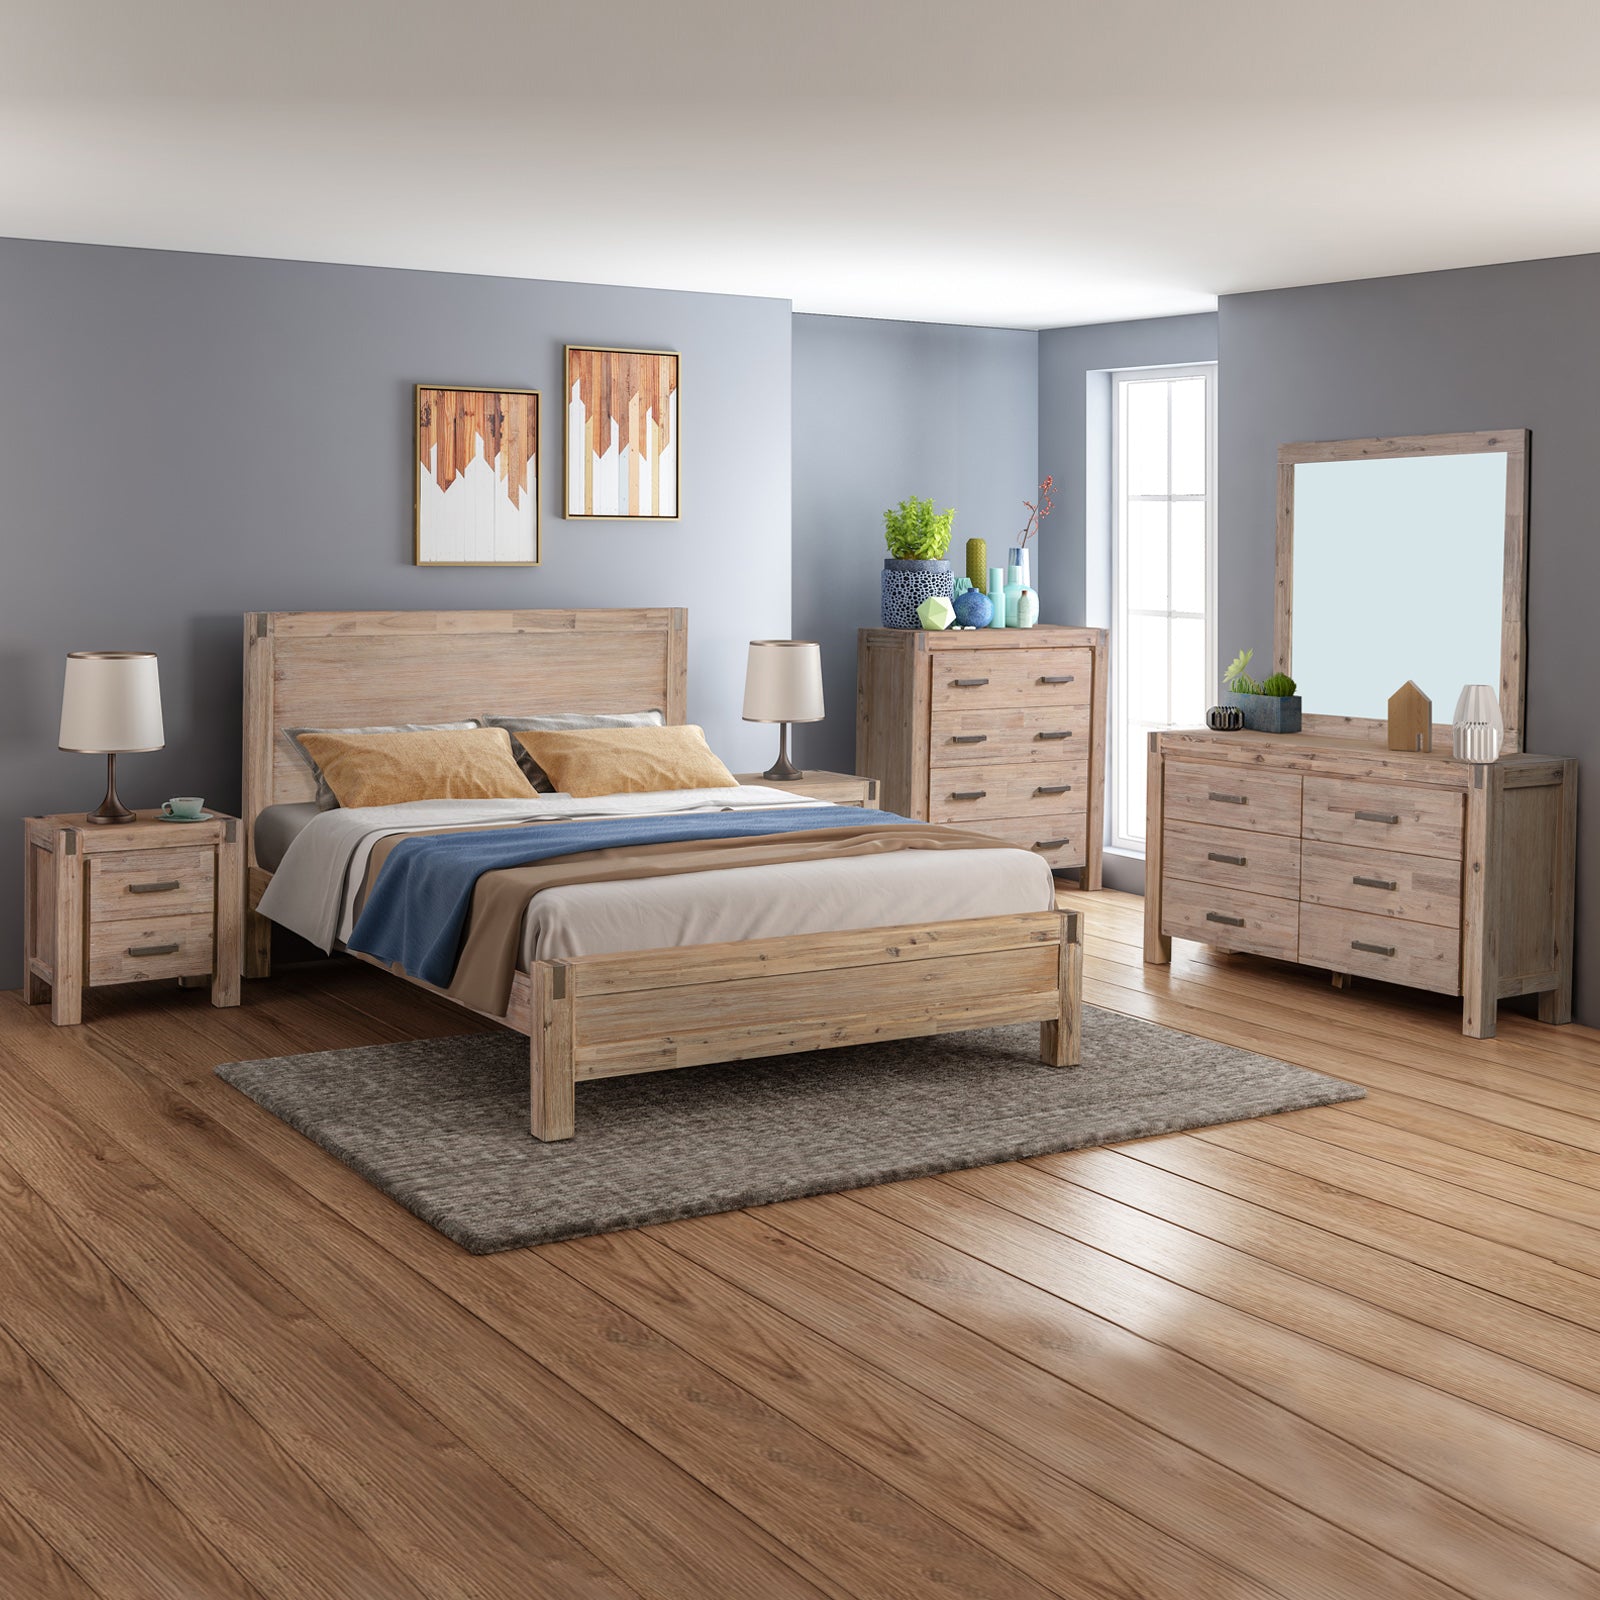 5 Pieces Queen Size Bedroom Suite in Solid Wood